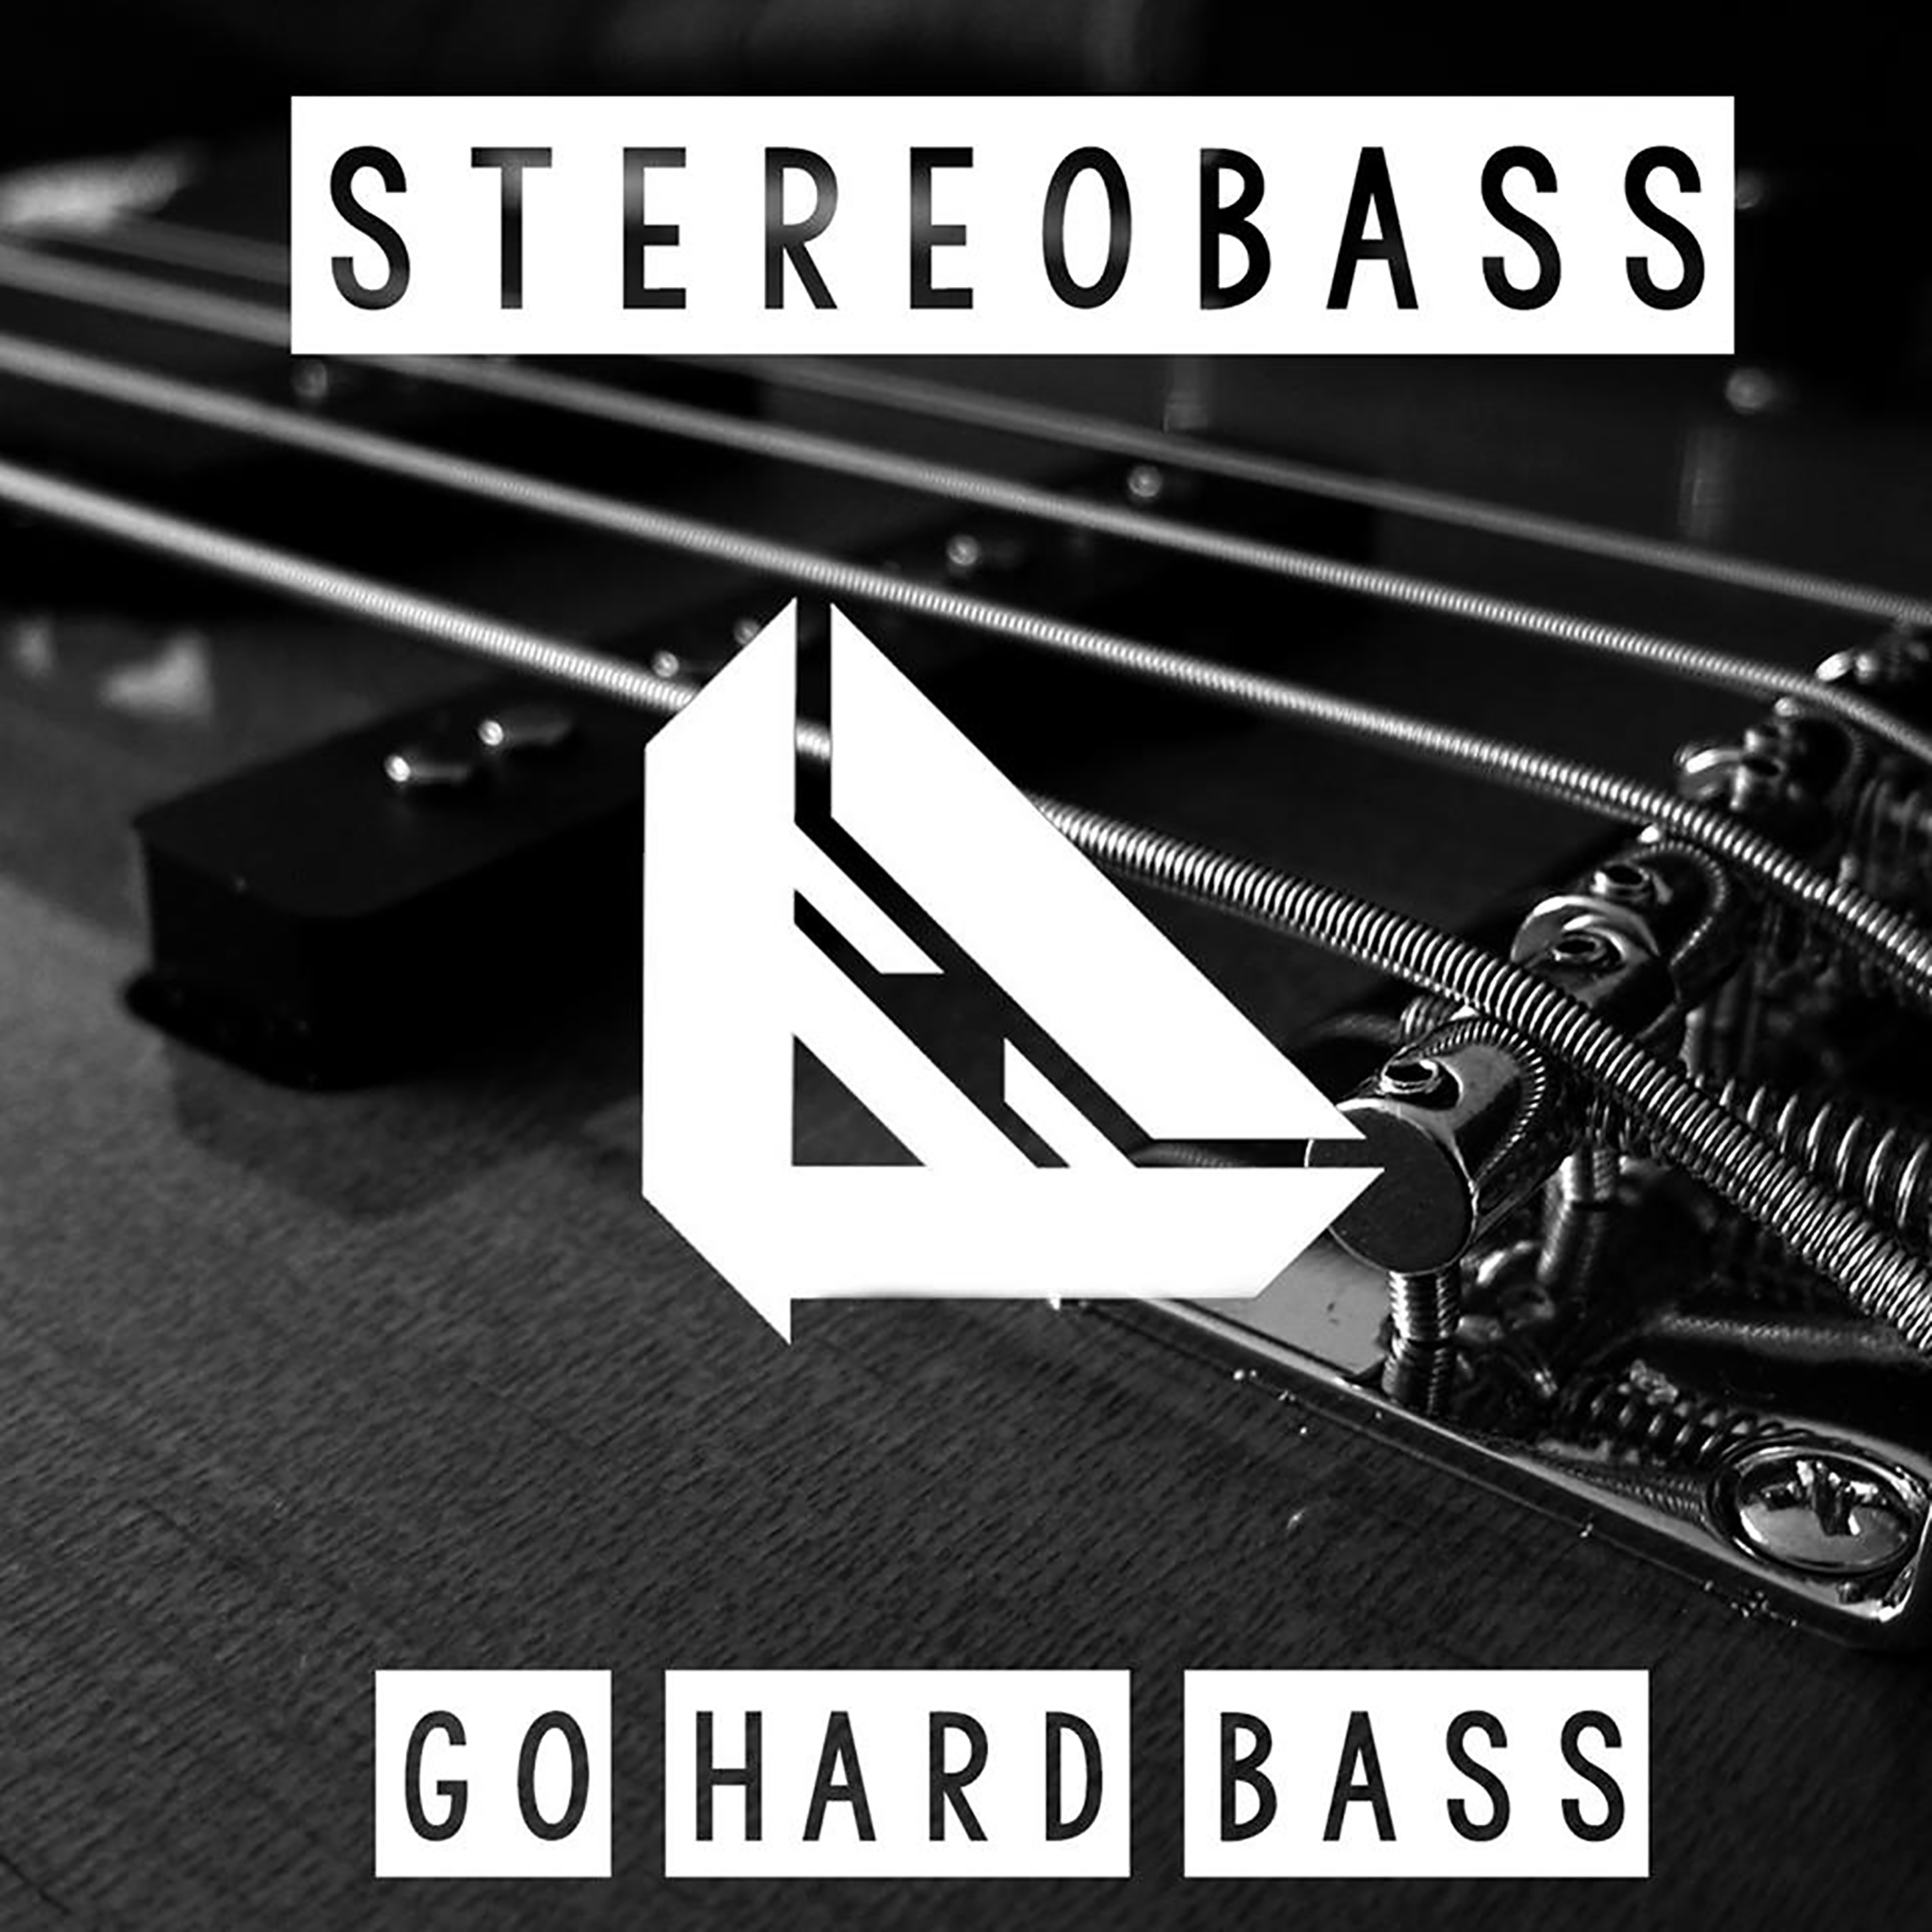 Жесткий басс. Go hard текст. Музыка hard Bass. Bass фото текст.